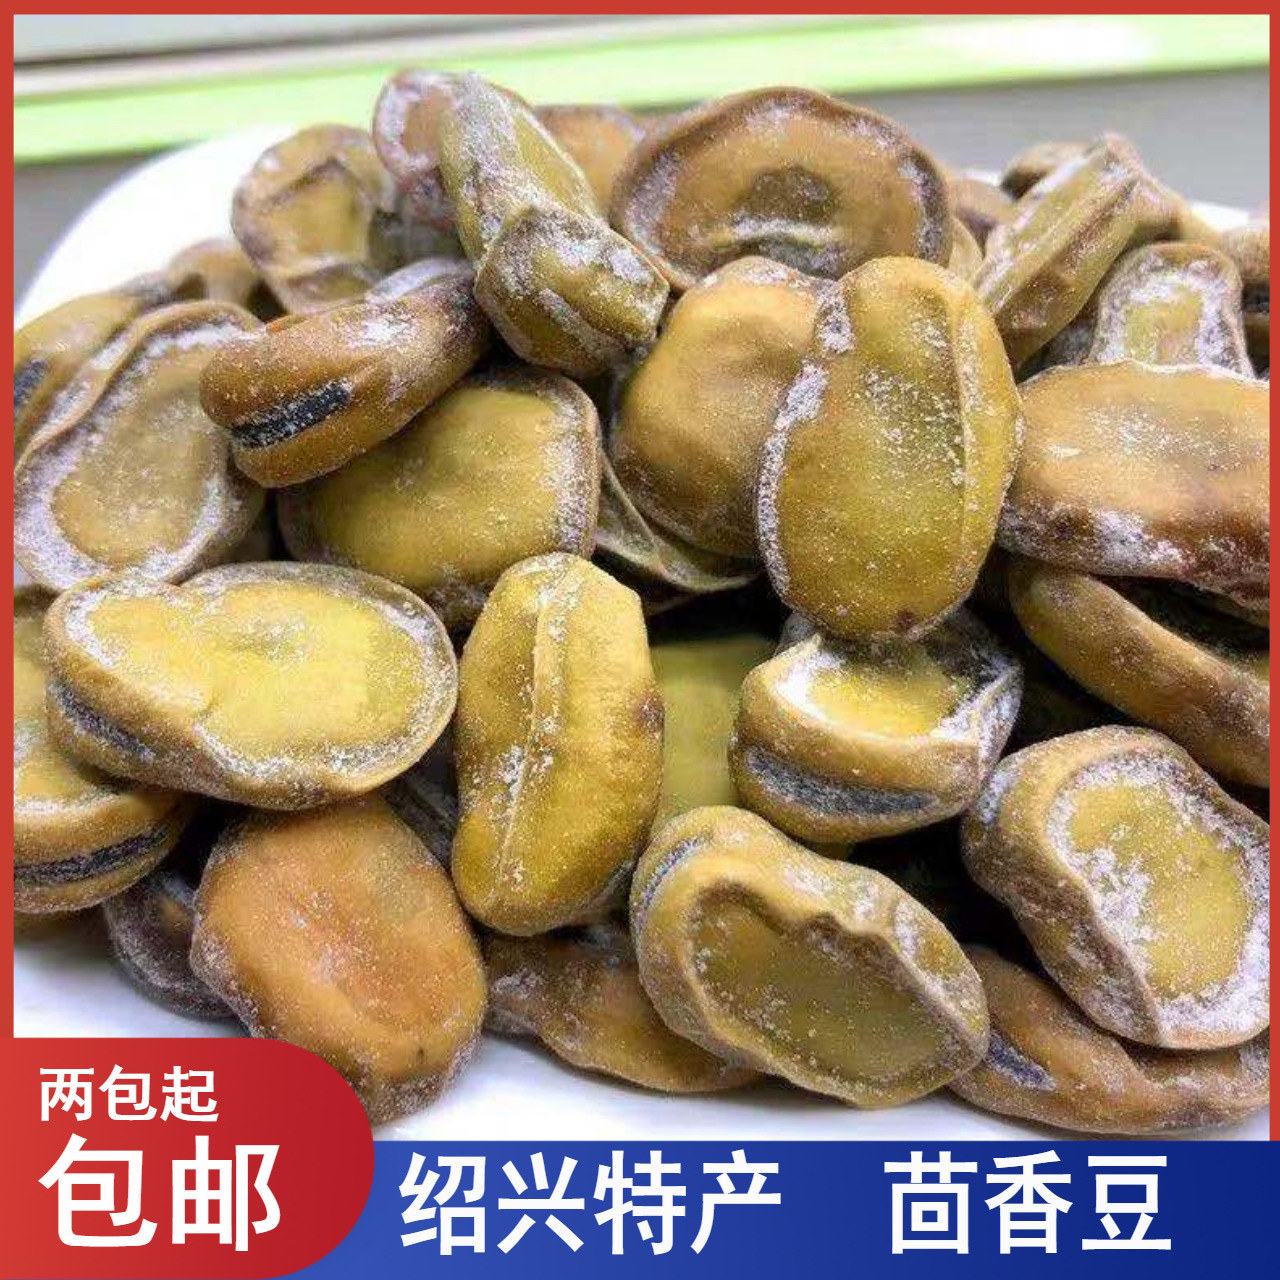 浙江绍兴特产五香茴香豆蚕豆孔乙己椒盐五香豆小零食500g兰花豆